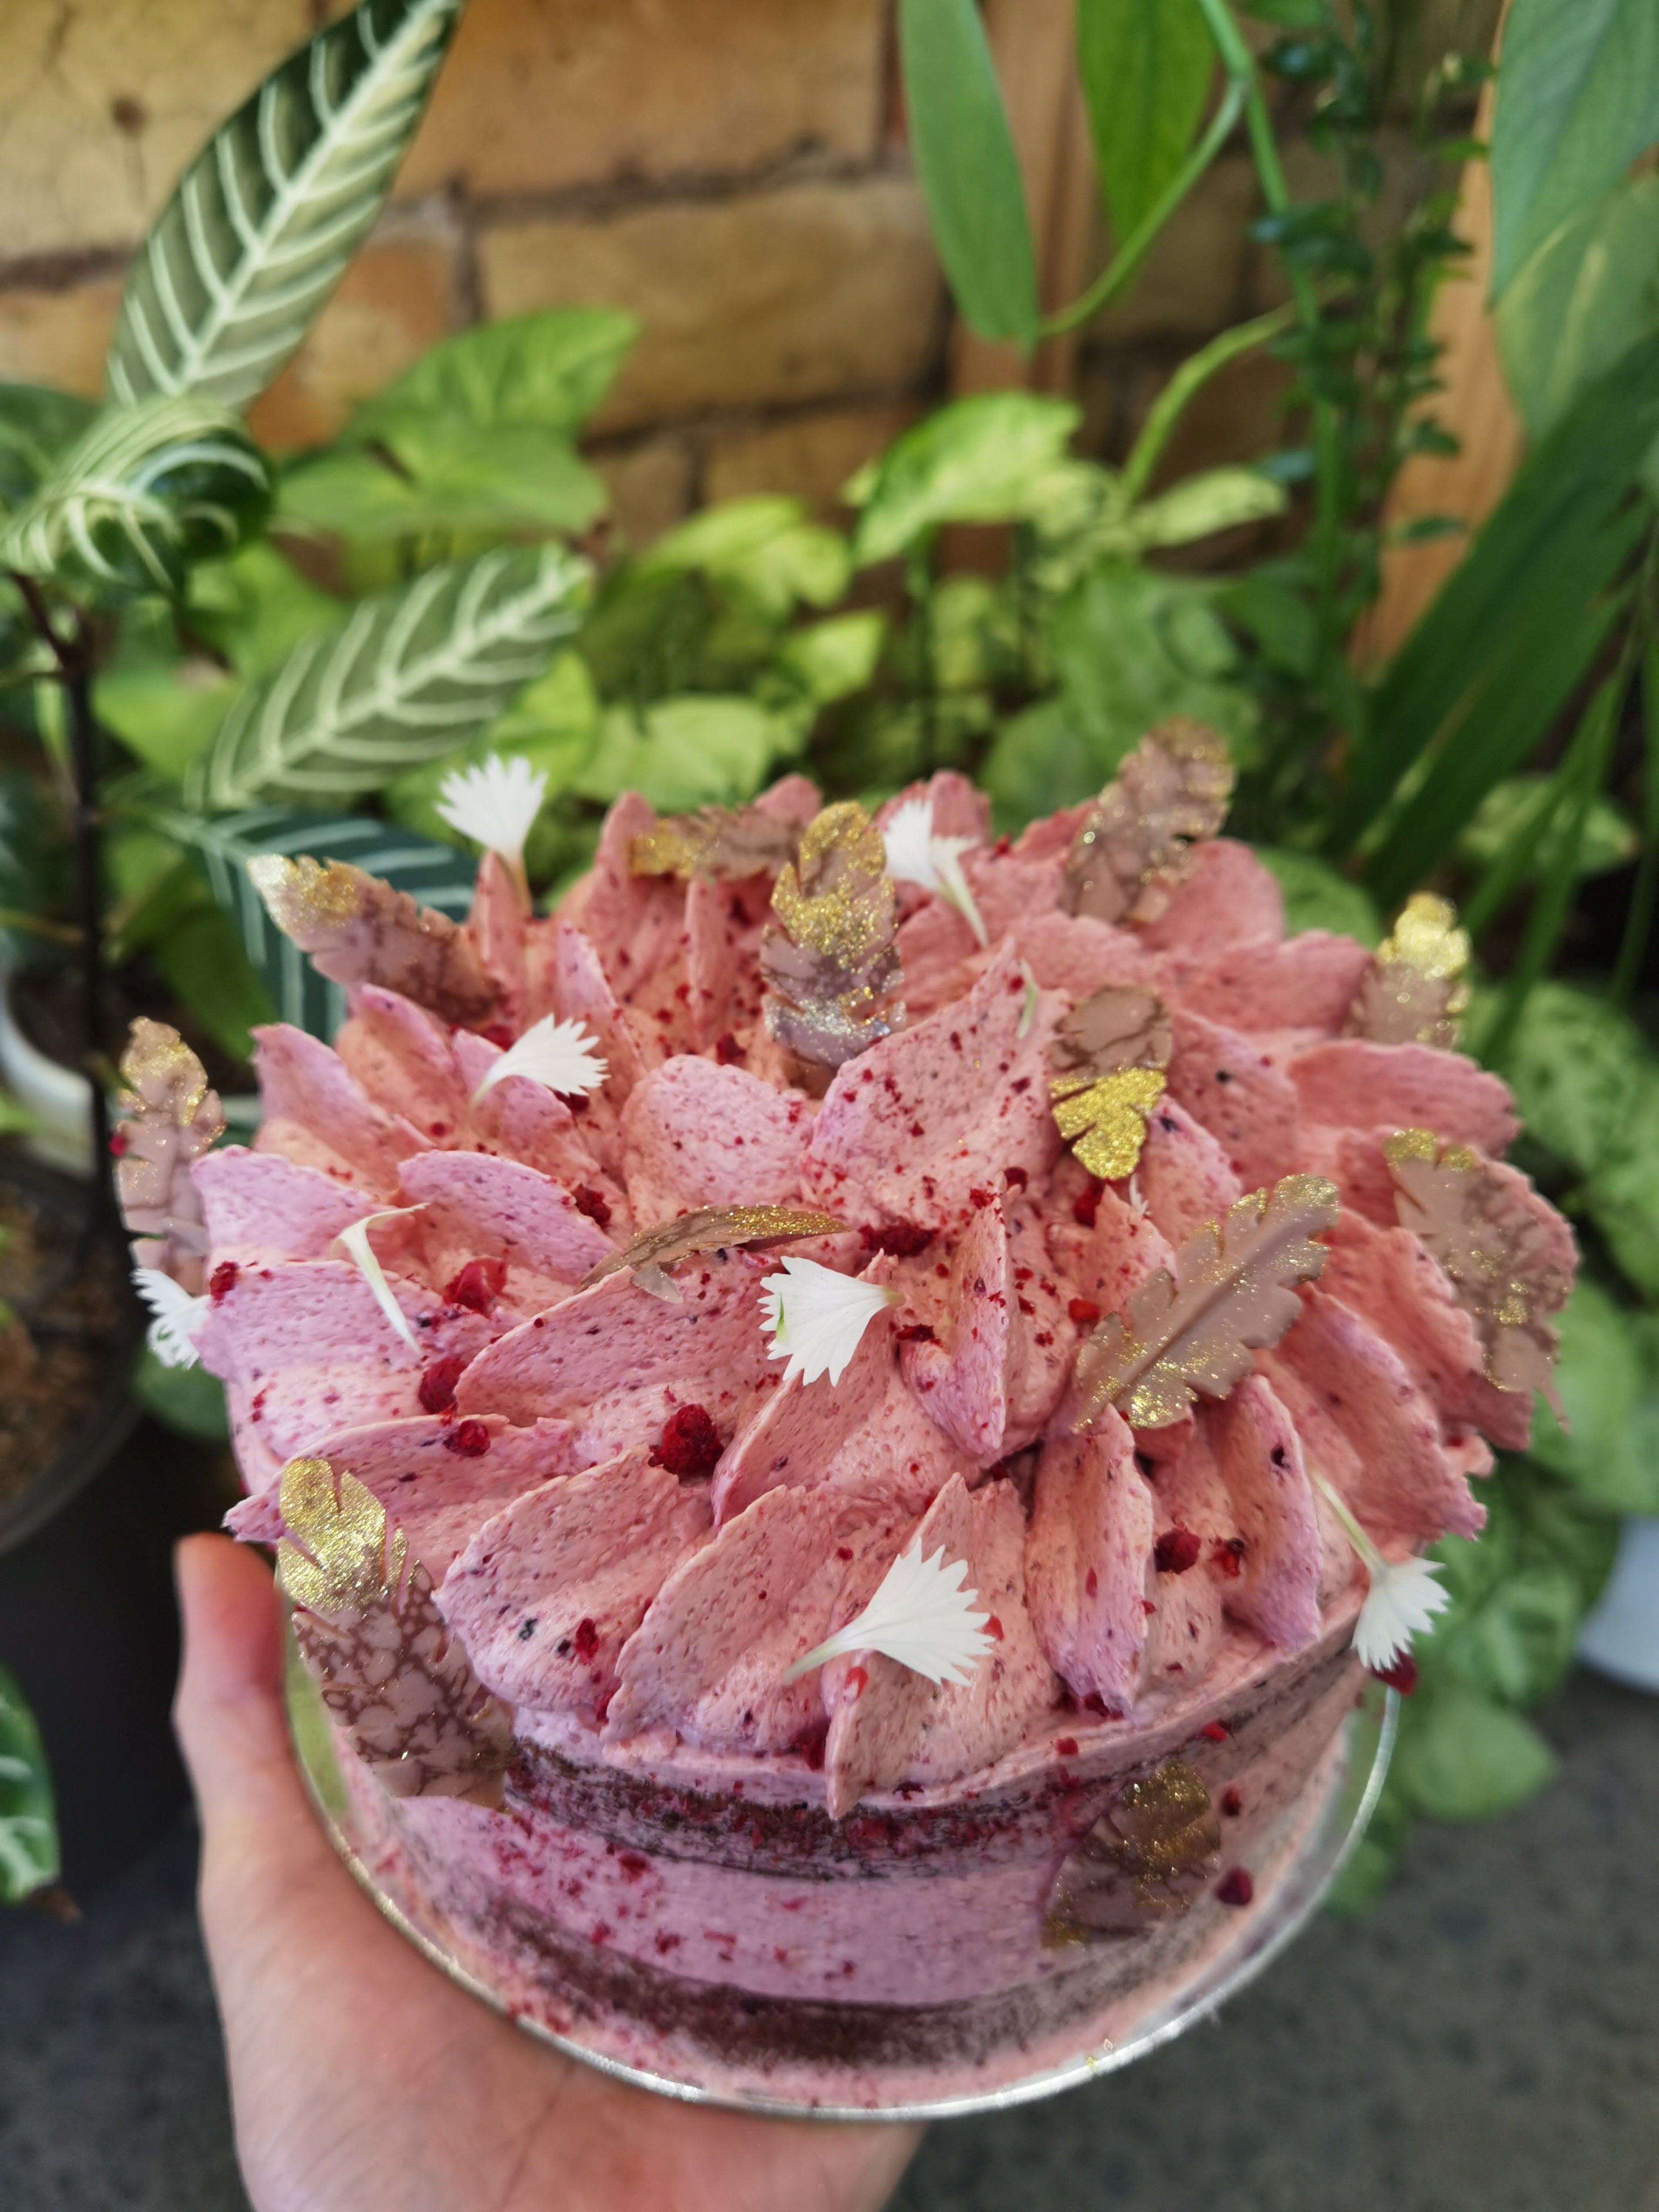 100% Plant Based Vegan Red Velvet Cake